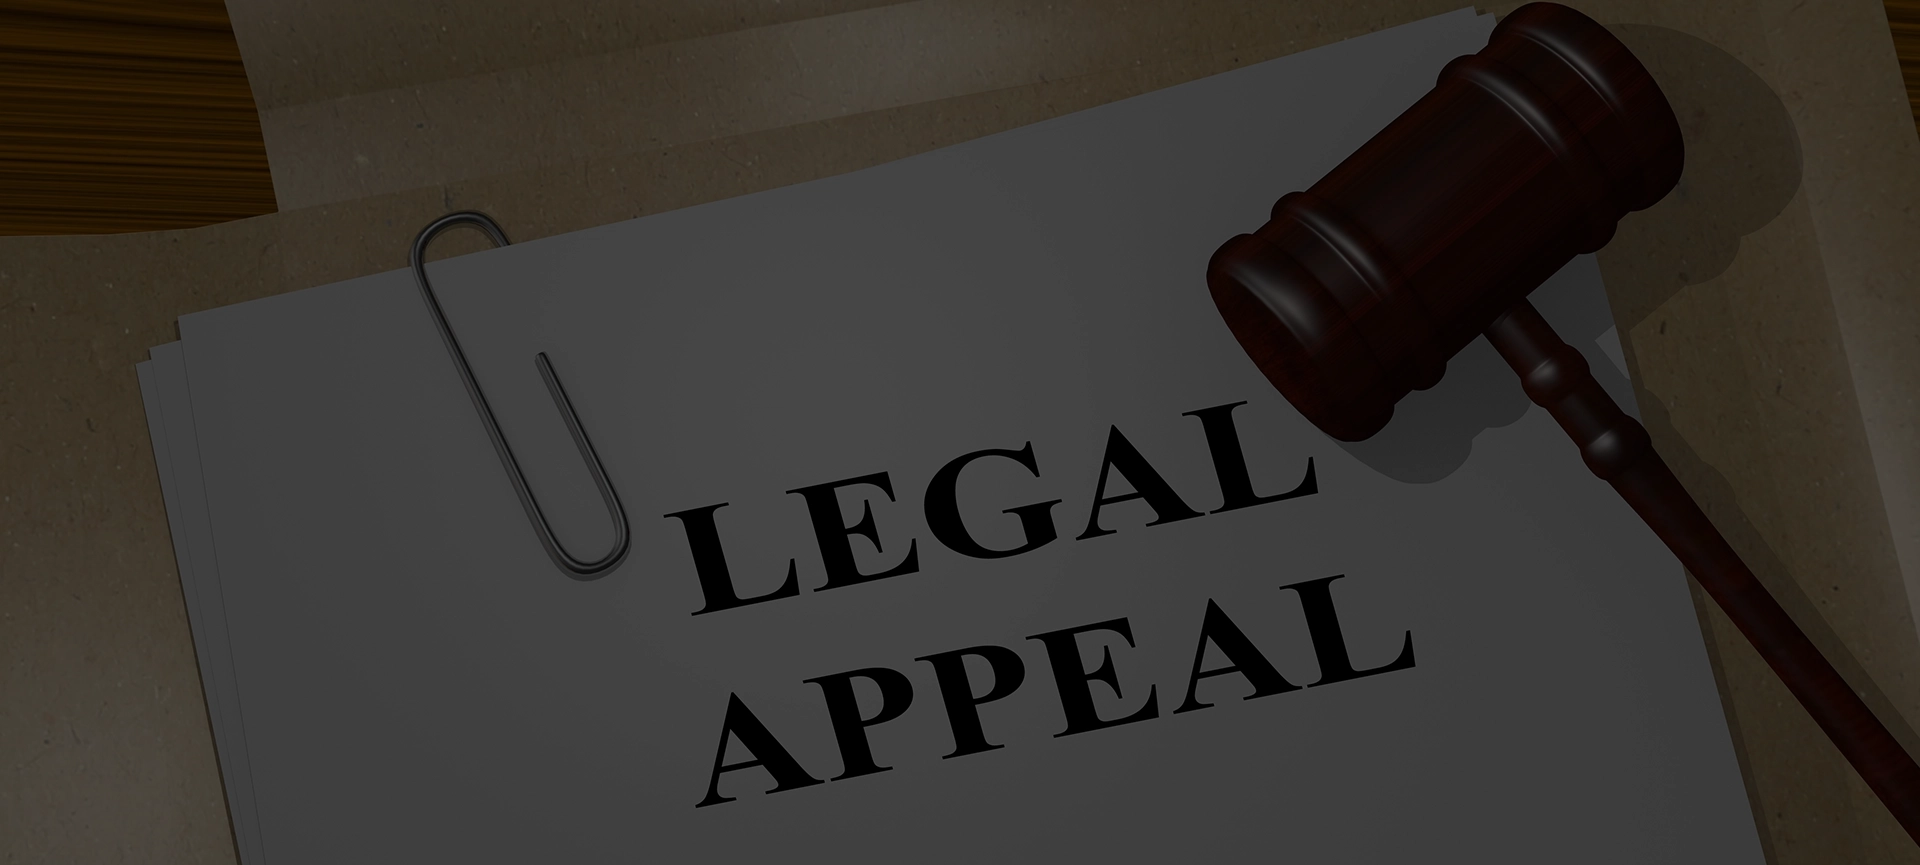 defendants in appeals